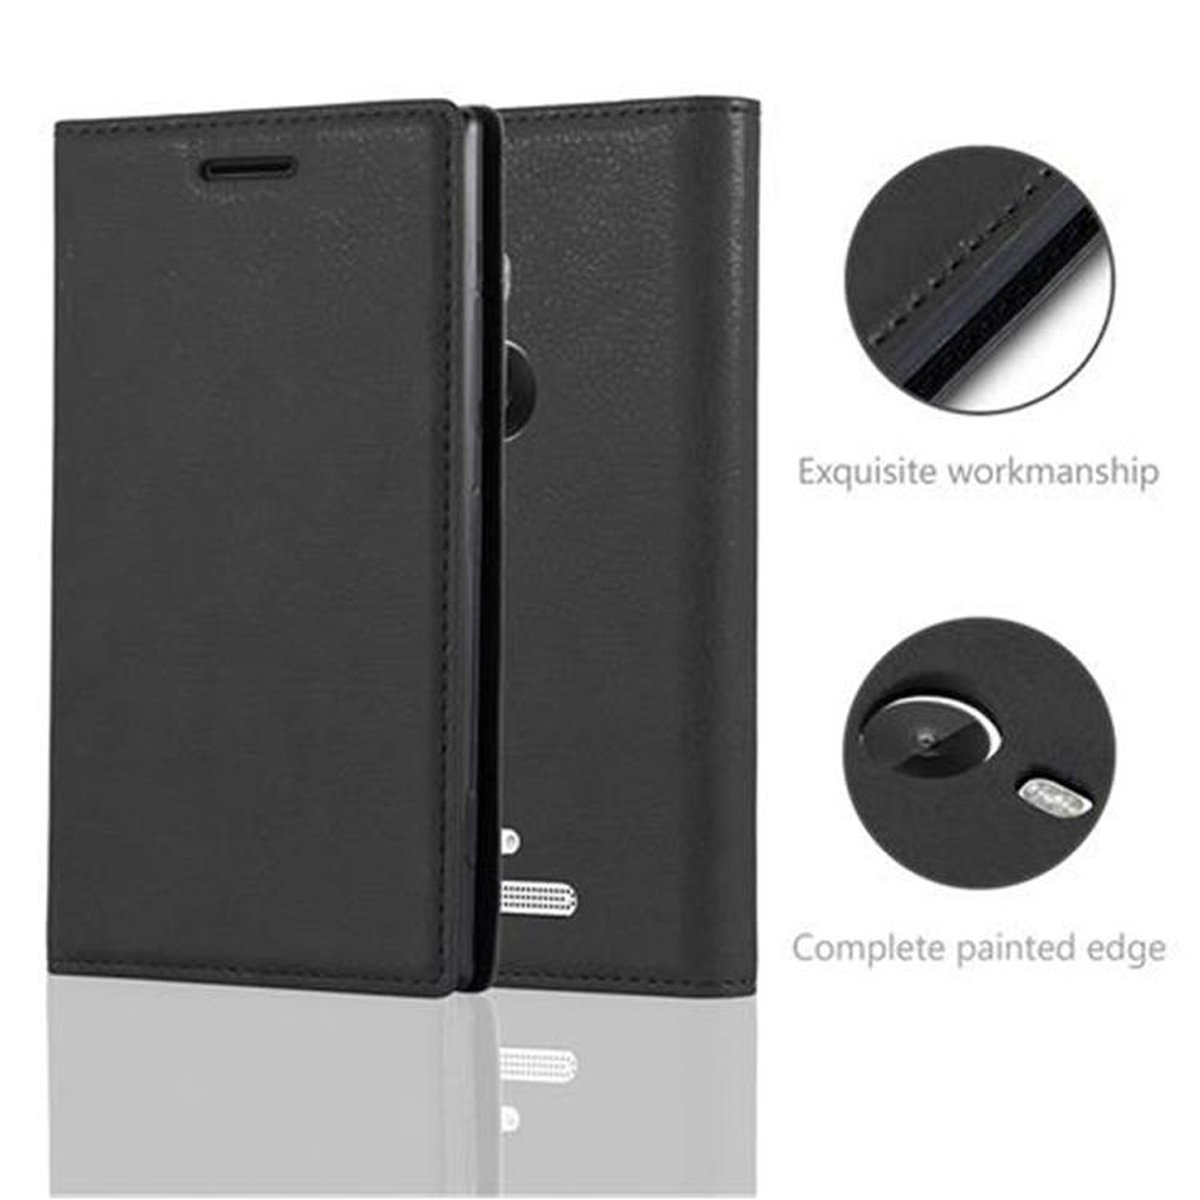 NACHT CADORABO SCHWARZ Bookcover, Invisible Magnet, Hülle Book Nokia, Lumia 925,